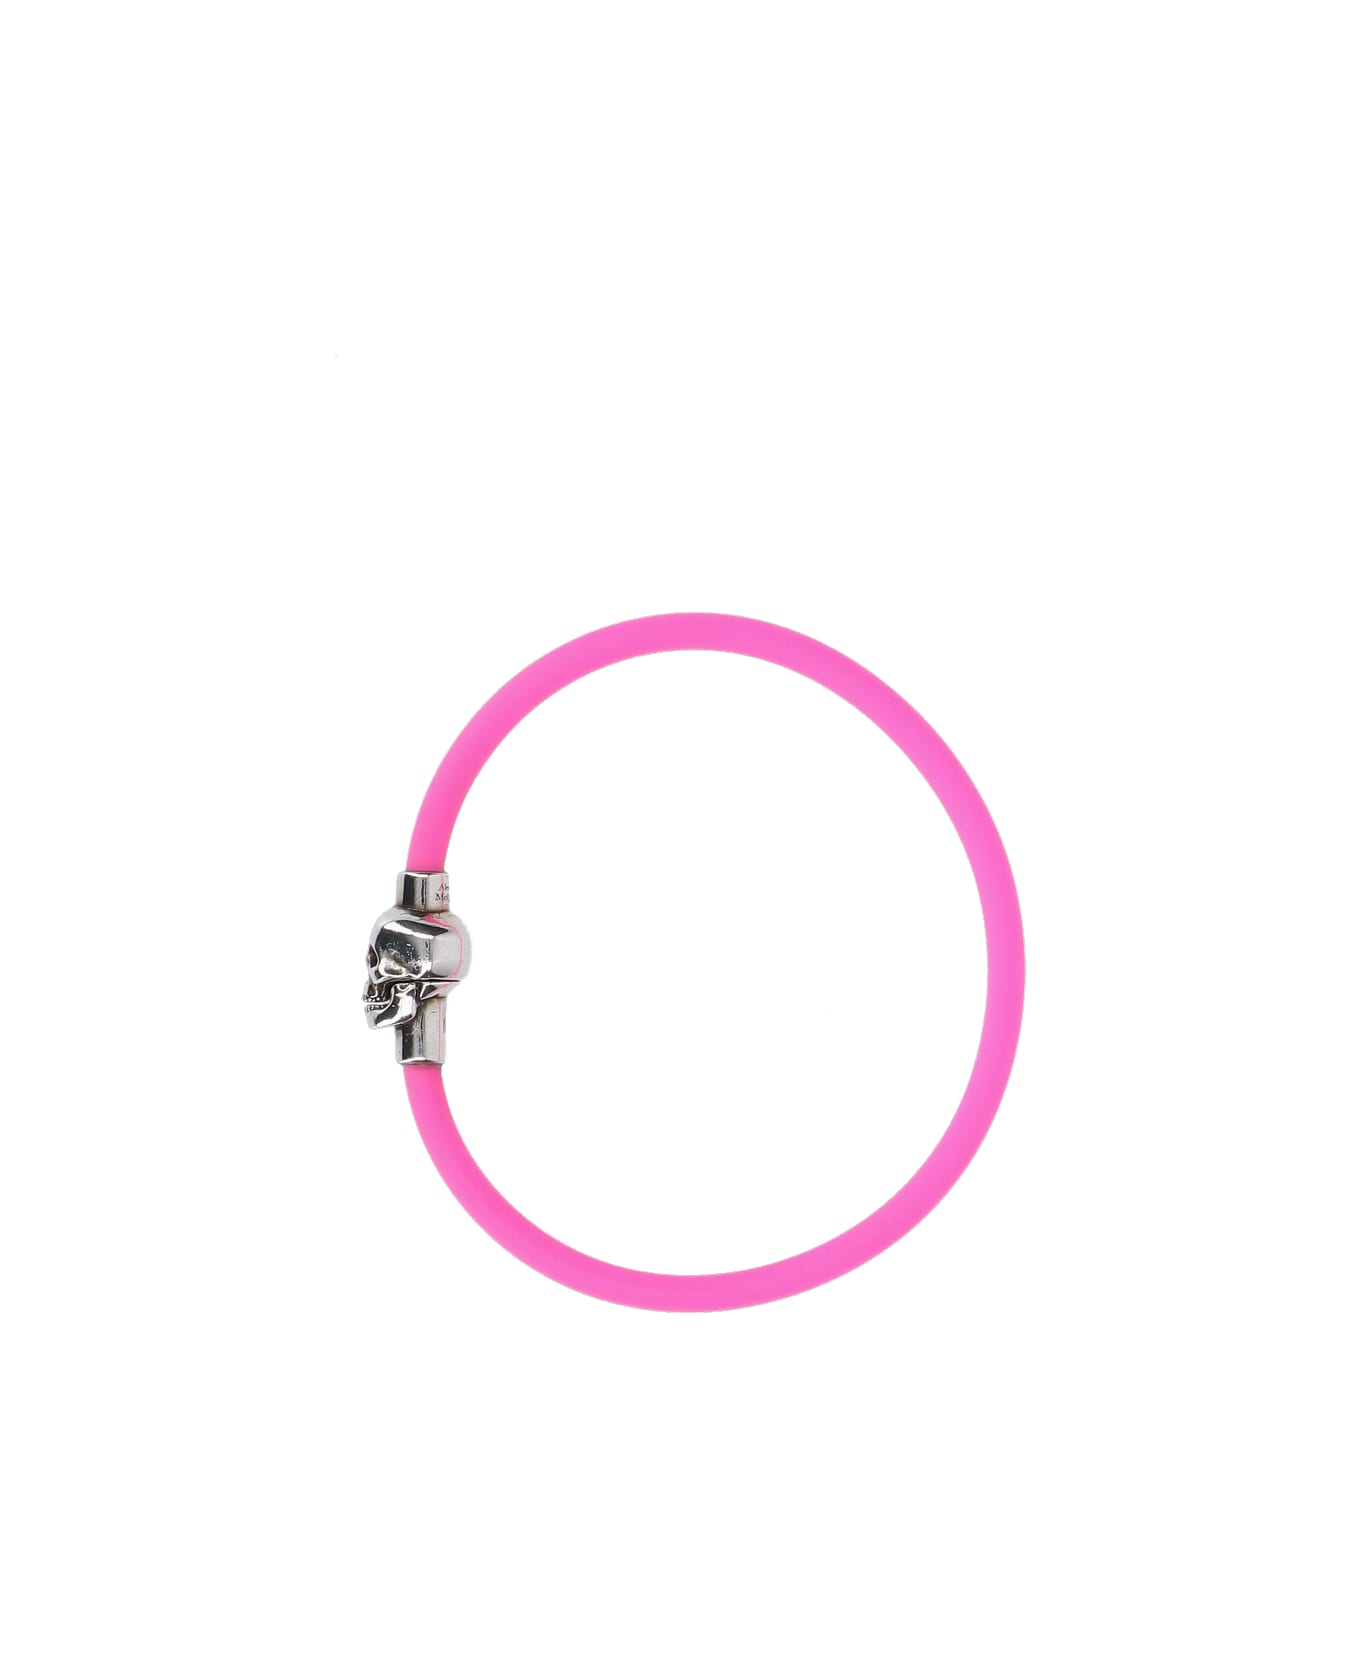 Alexander McQueen Jewelry - Pink